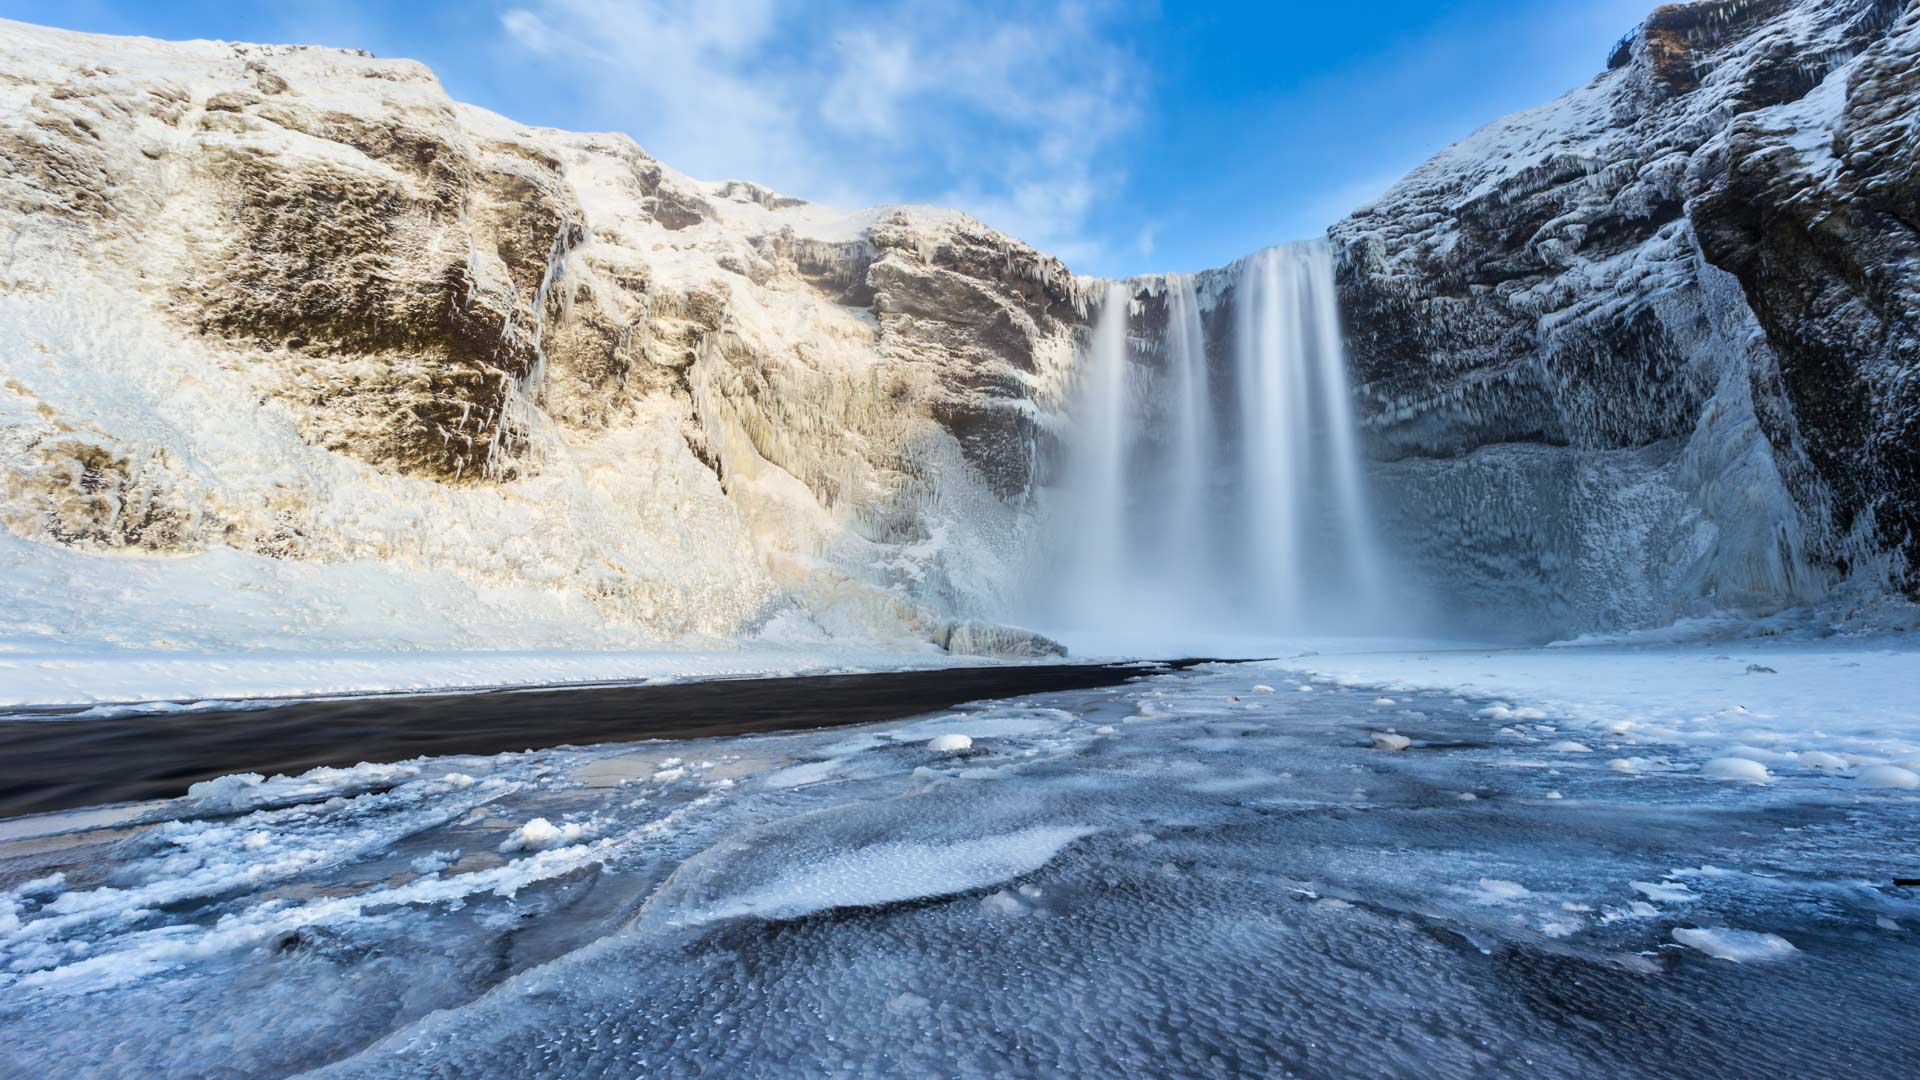 Iceland's Skogafoss waterfall in winter